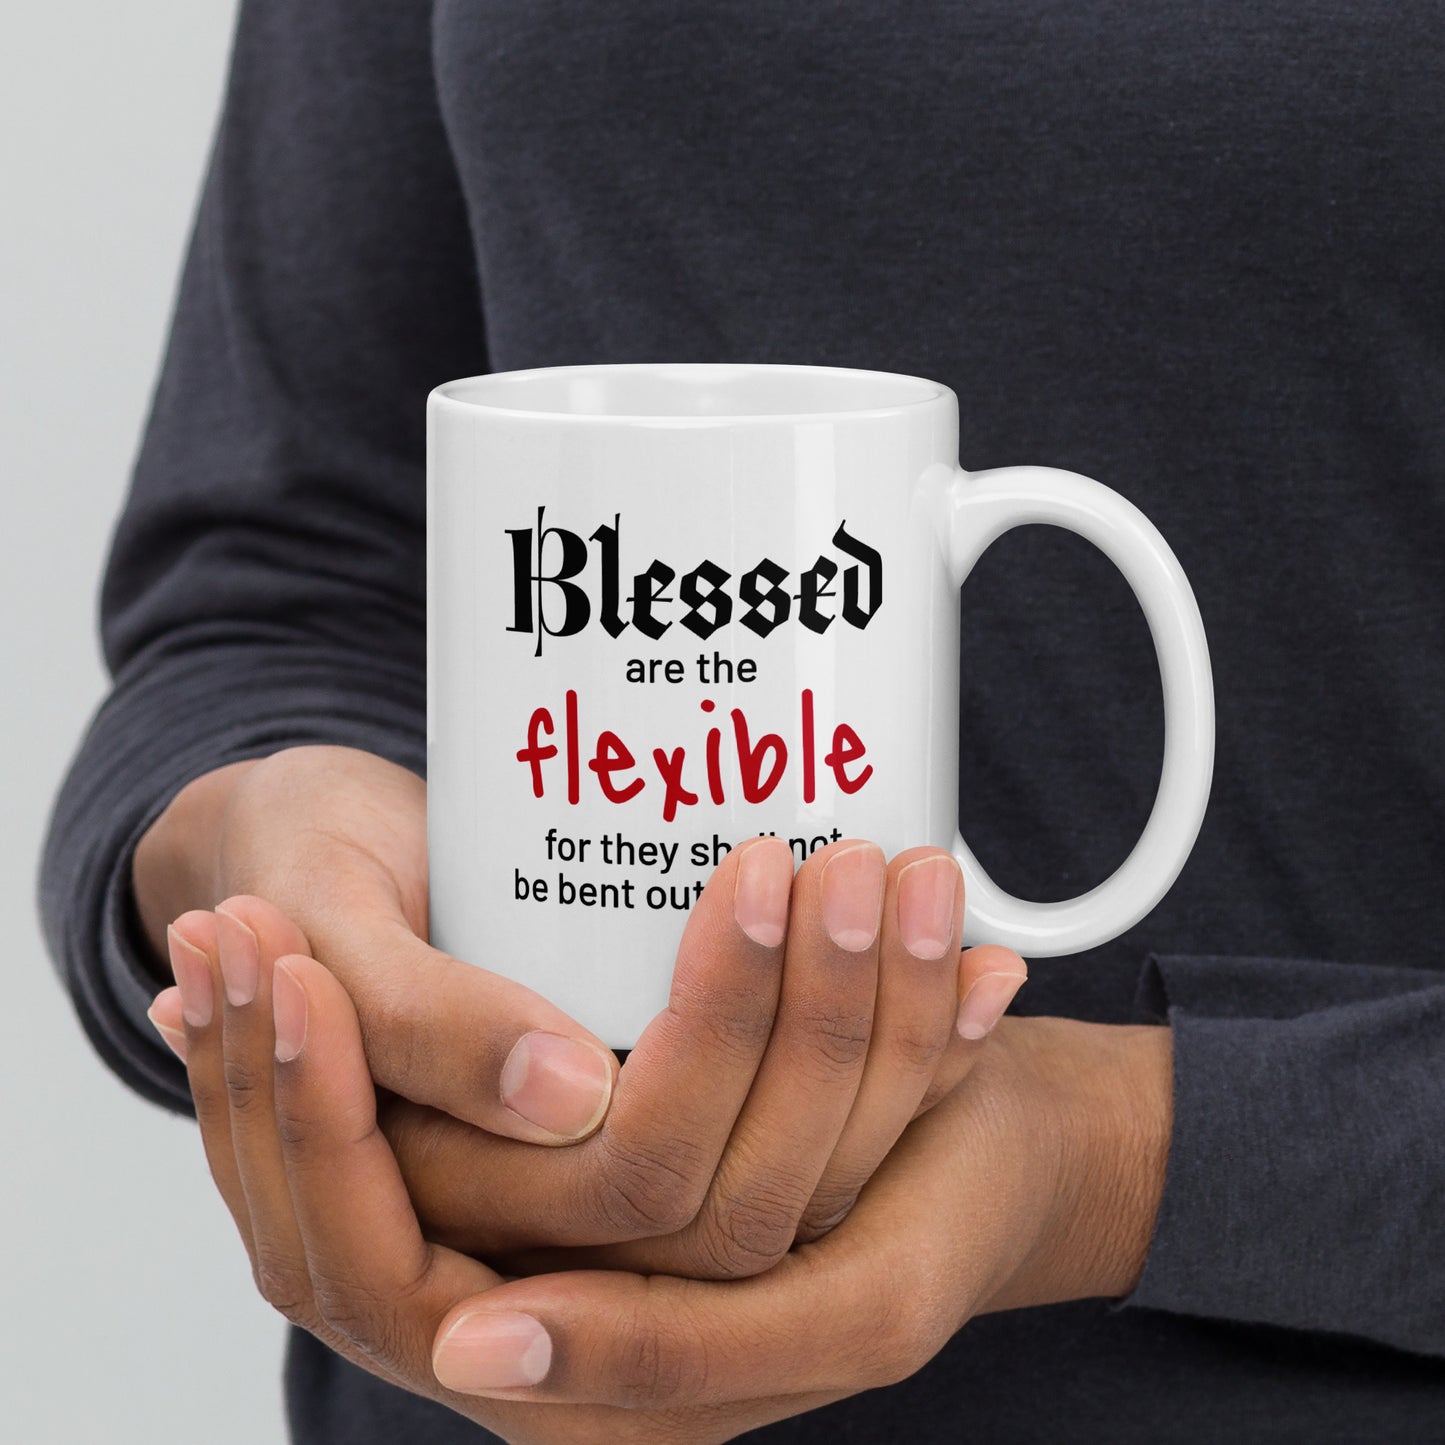 Blessed Flexible mug